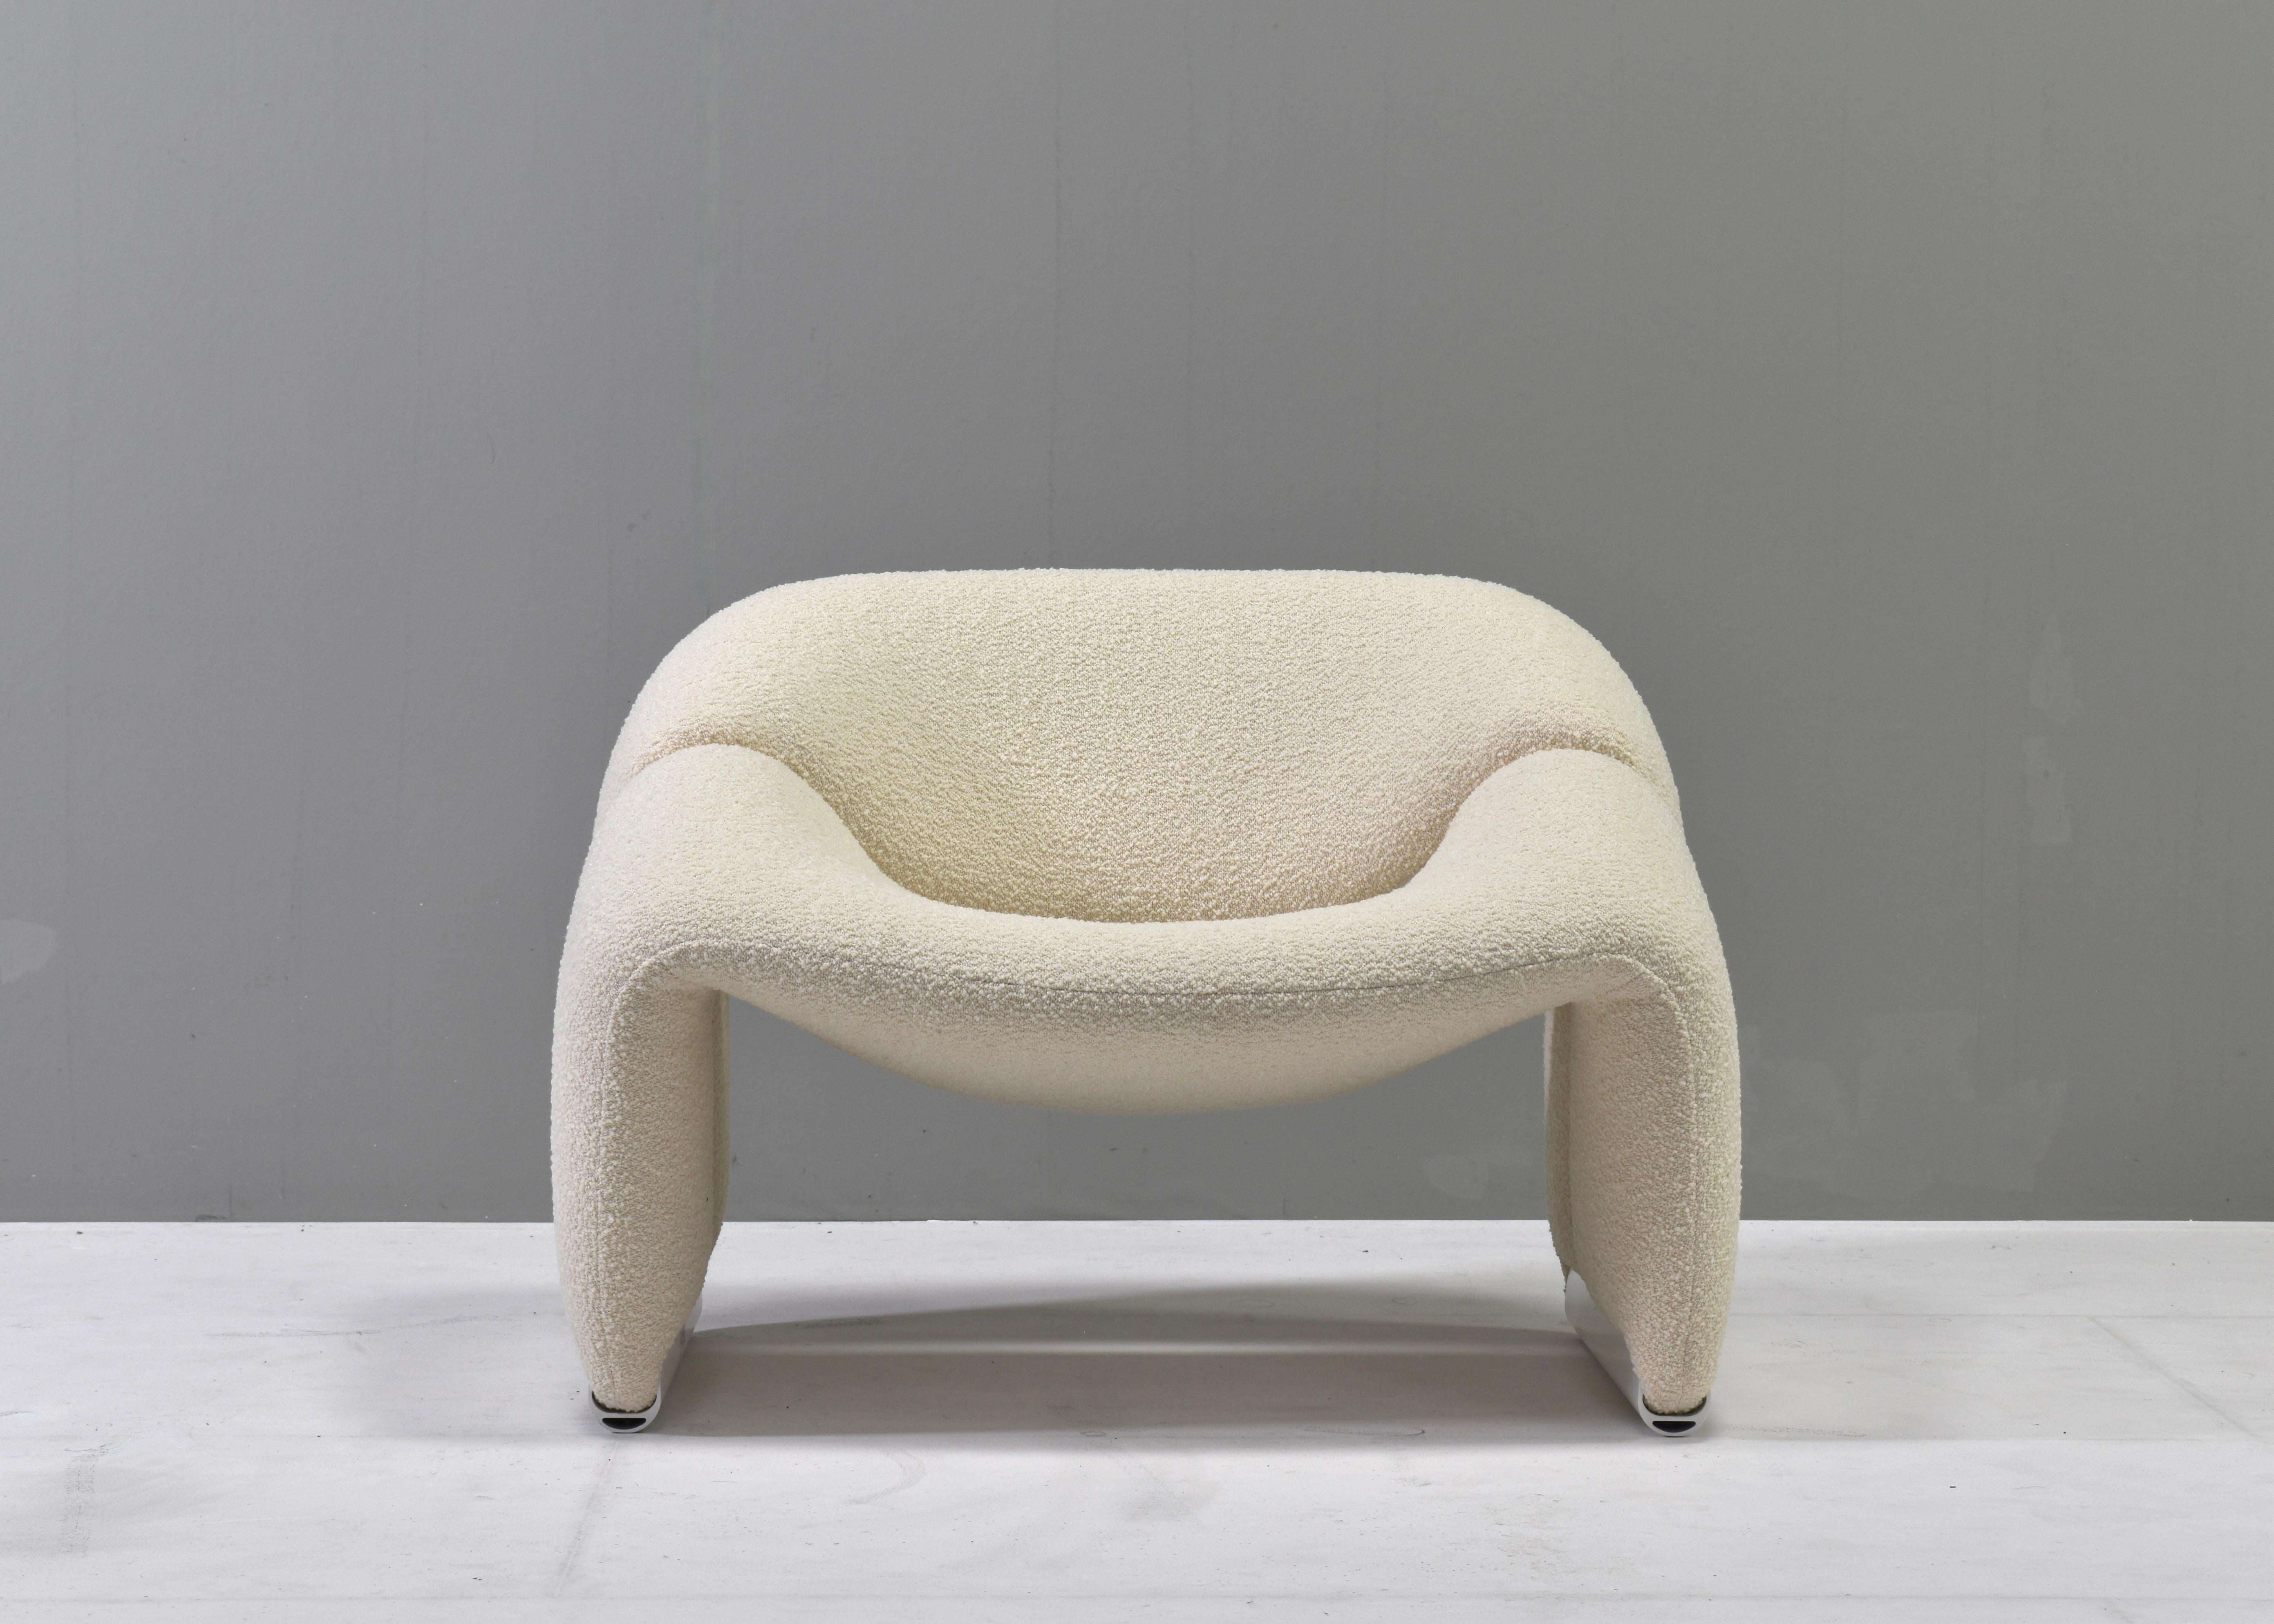 Lounge-Sessel 'Groovy' F598 von Pierre Paulin für ARTIFORT - Niederlande, 1972. Sehr bequem und ergonomisch zu sitzen.

Der Stuhl wurde vollständig restauriert und mit neuem Schaumstoff und einer neuen Polsterung aus einem schönen, cremefarbenen